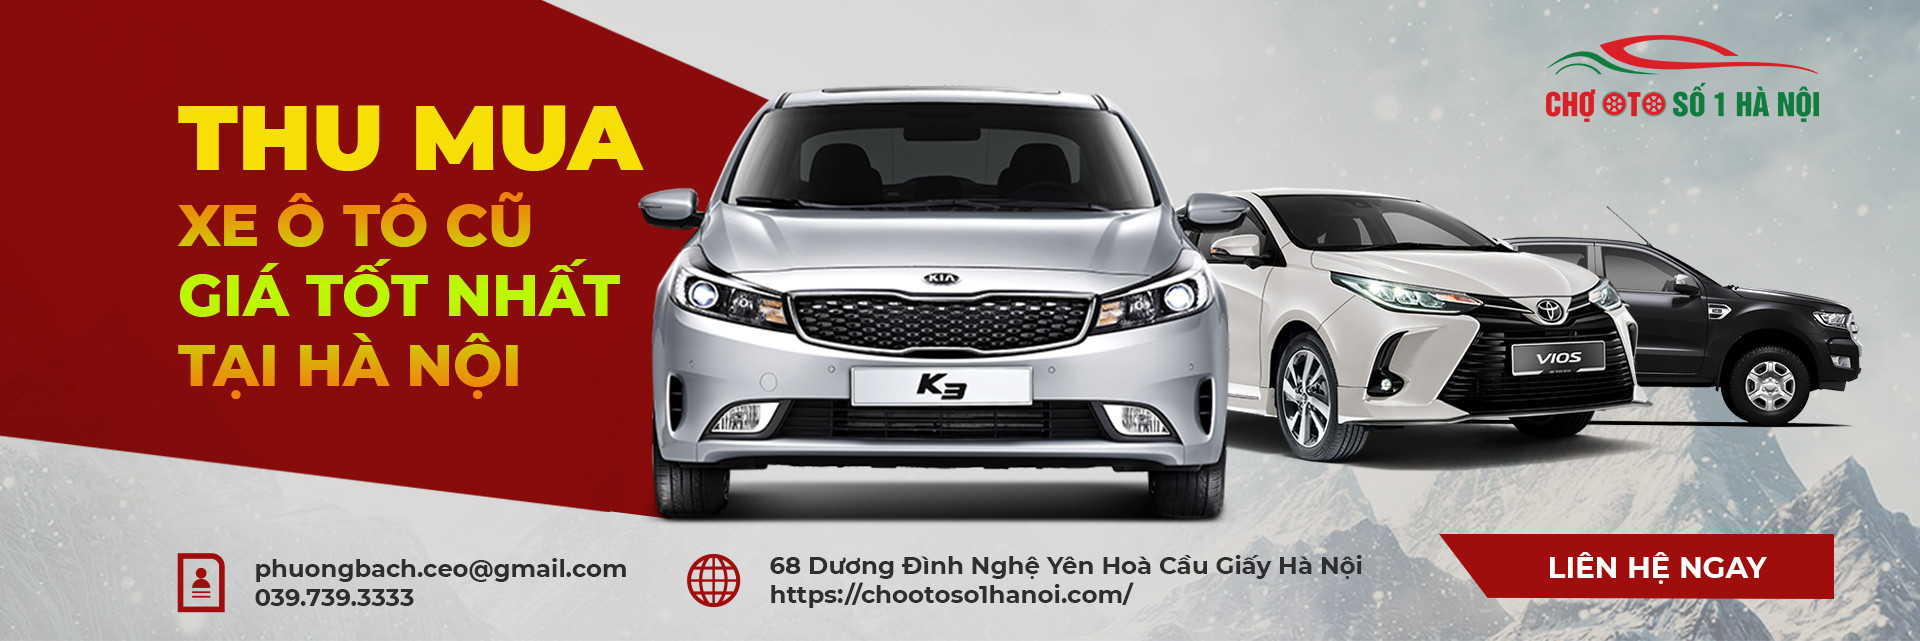 Dịch vụ Cho thuê xe ô tô tự lái Hà Nội uy tín chất lượng  Cho thuê xe ô tô  Văn Minh